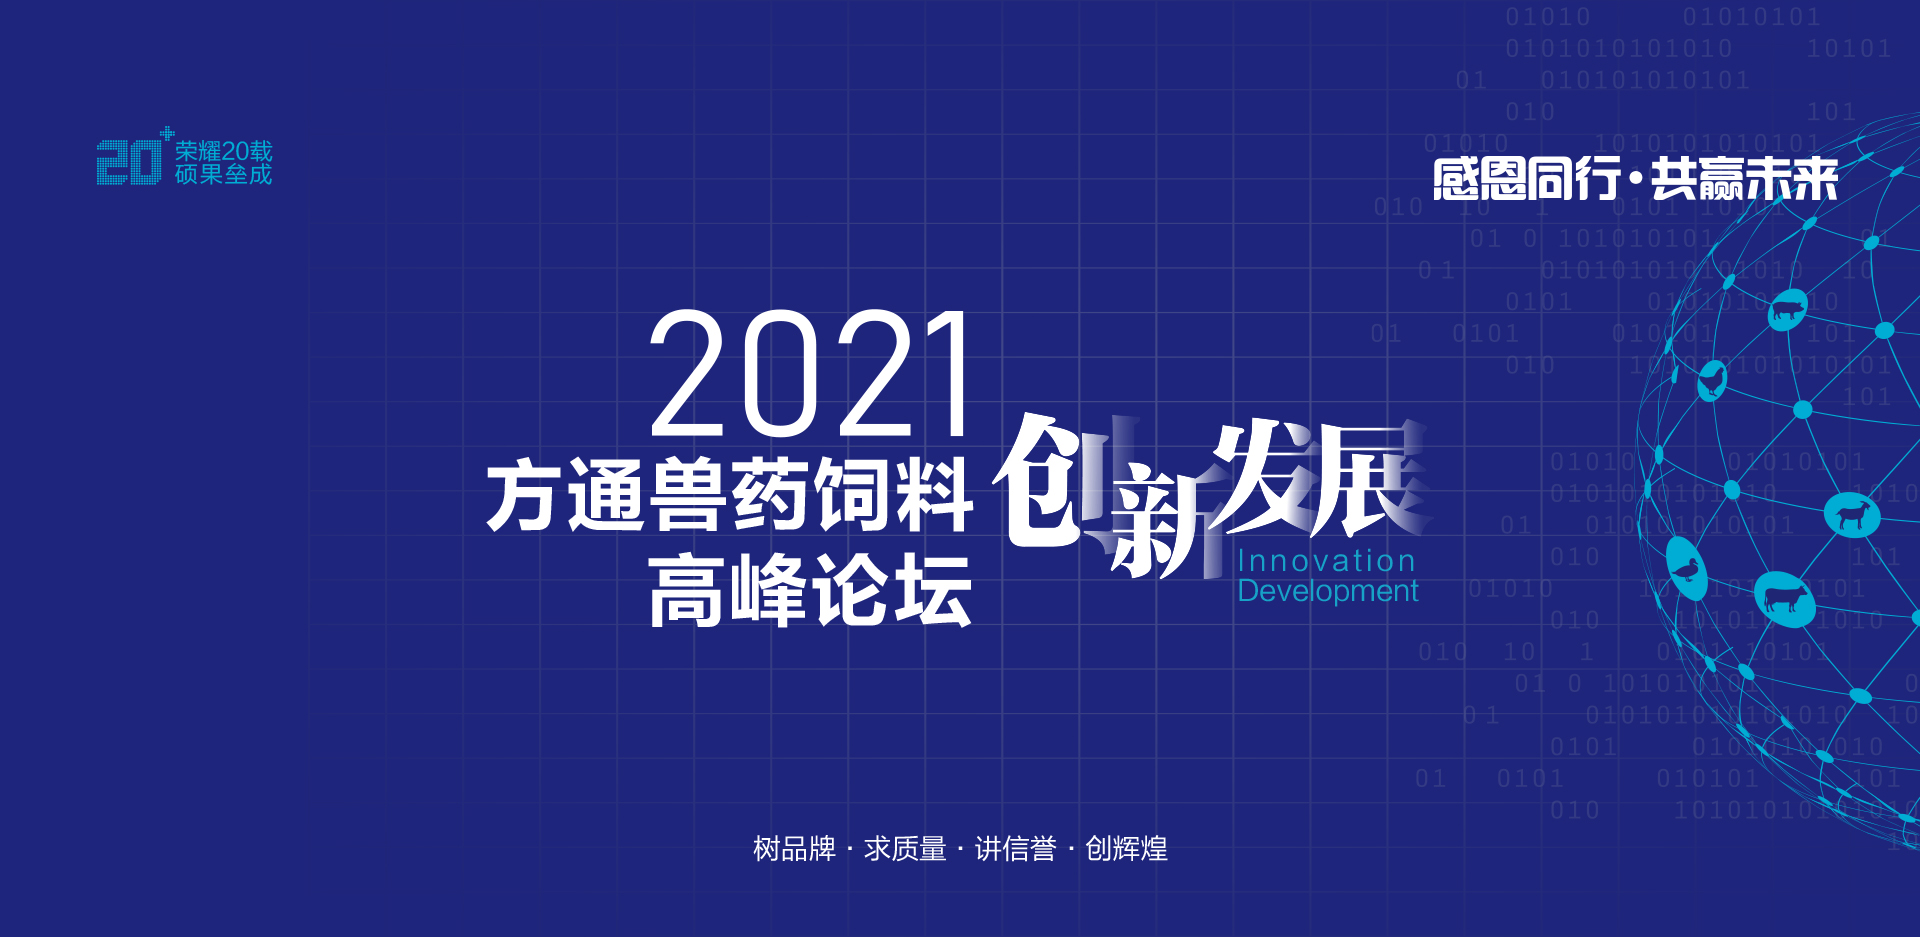 2021方通獸藥飼料創新發展高峰論壇